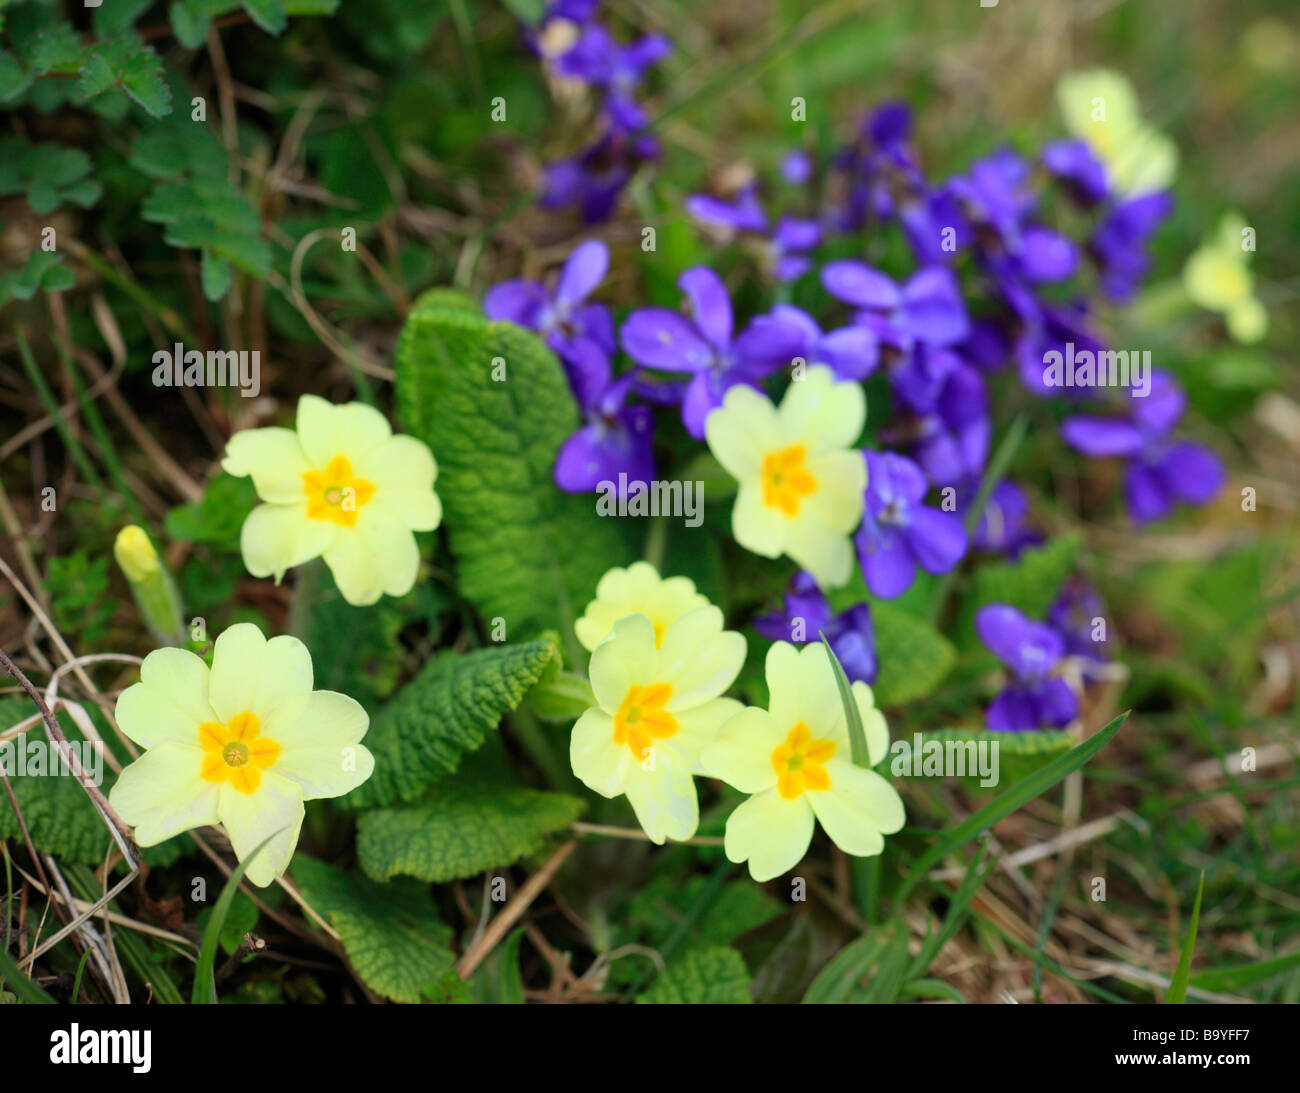 Wild Primrose, Primula Vulgaris e dolce fiori viola. Downe Banca, Kent, Inghilterra, Regno Unito. Foto Stock